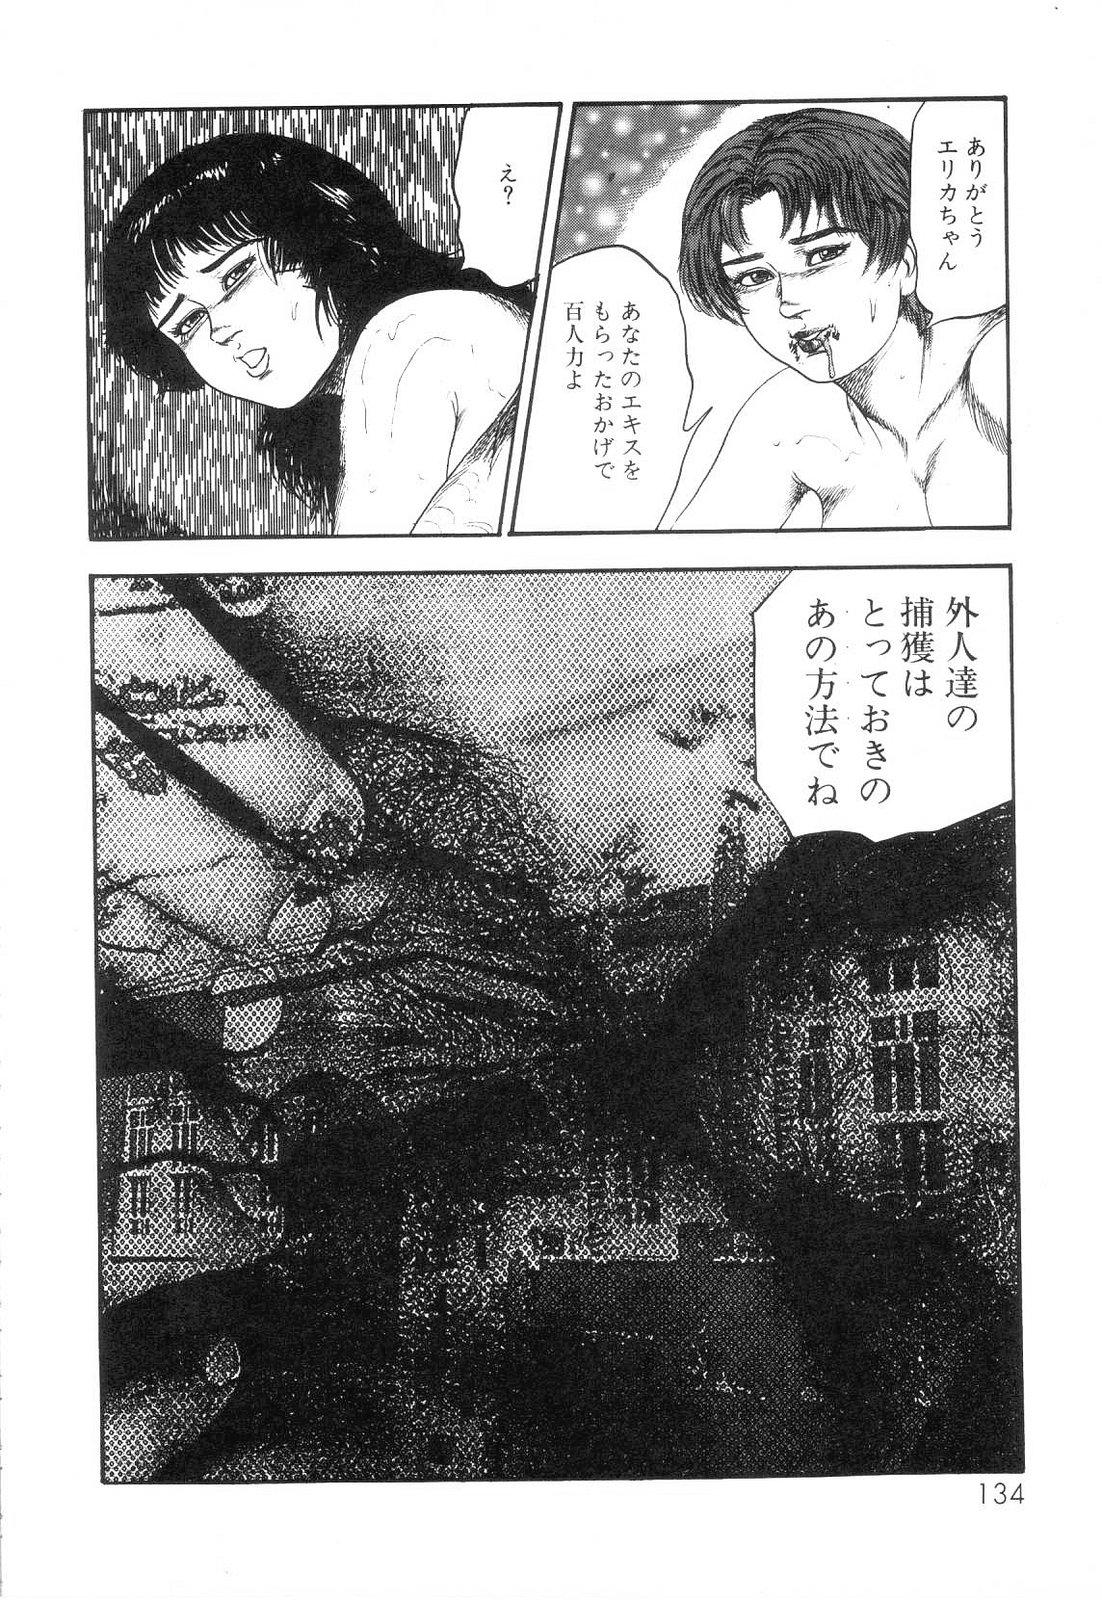 Shiro no Mokushiroku Vol. 6 - Juuai Erika no Shou 135